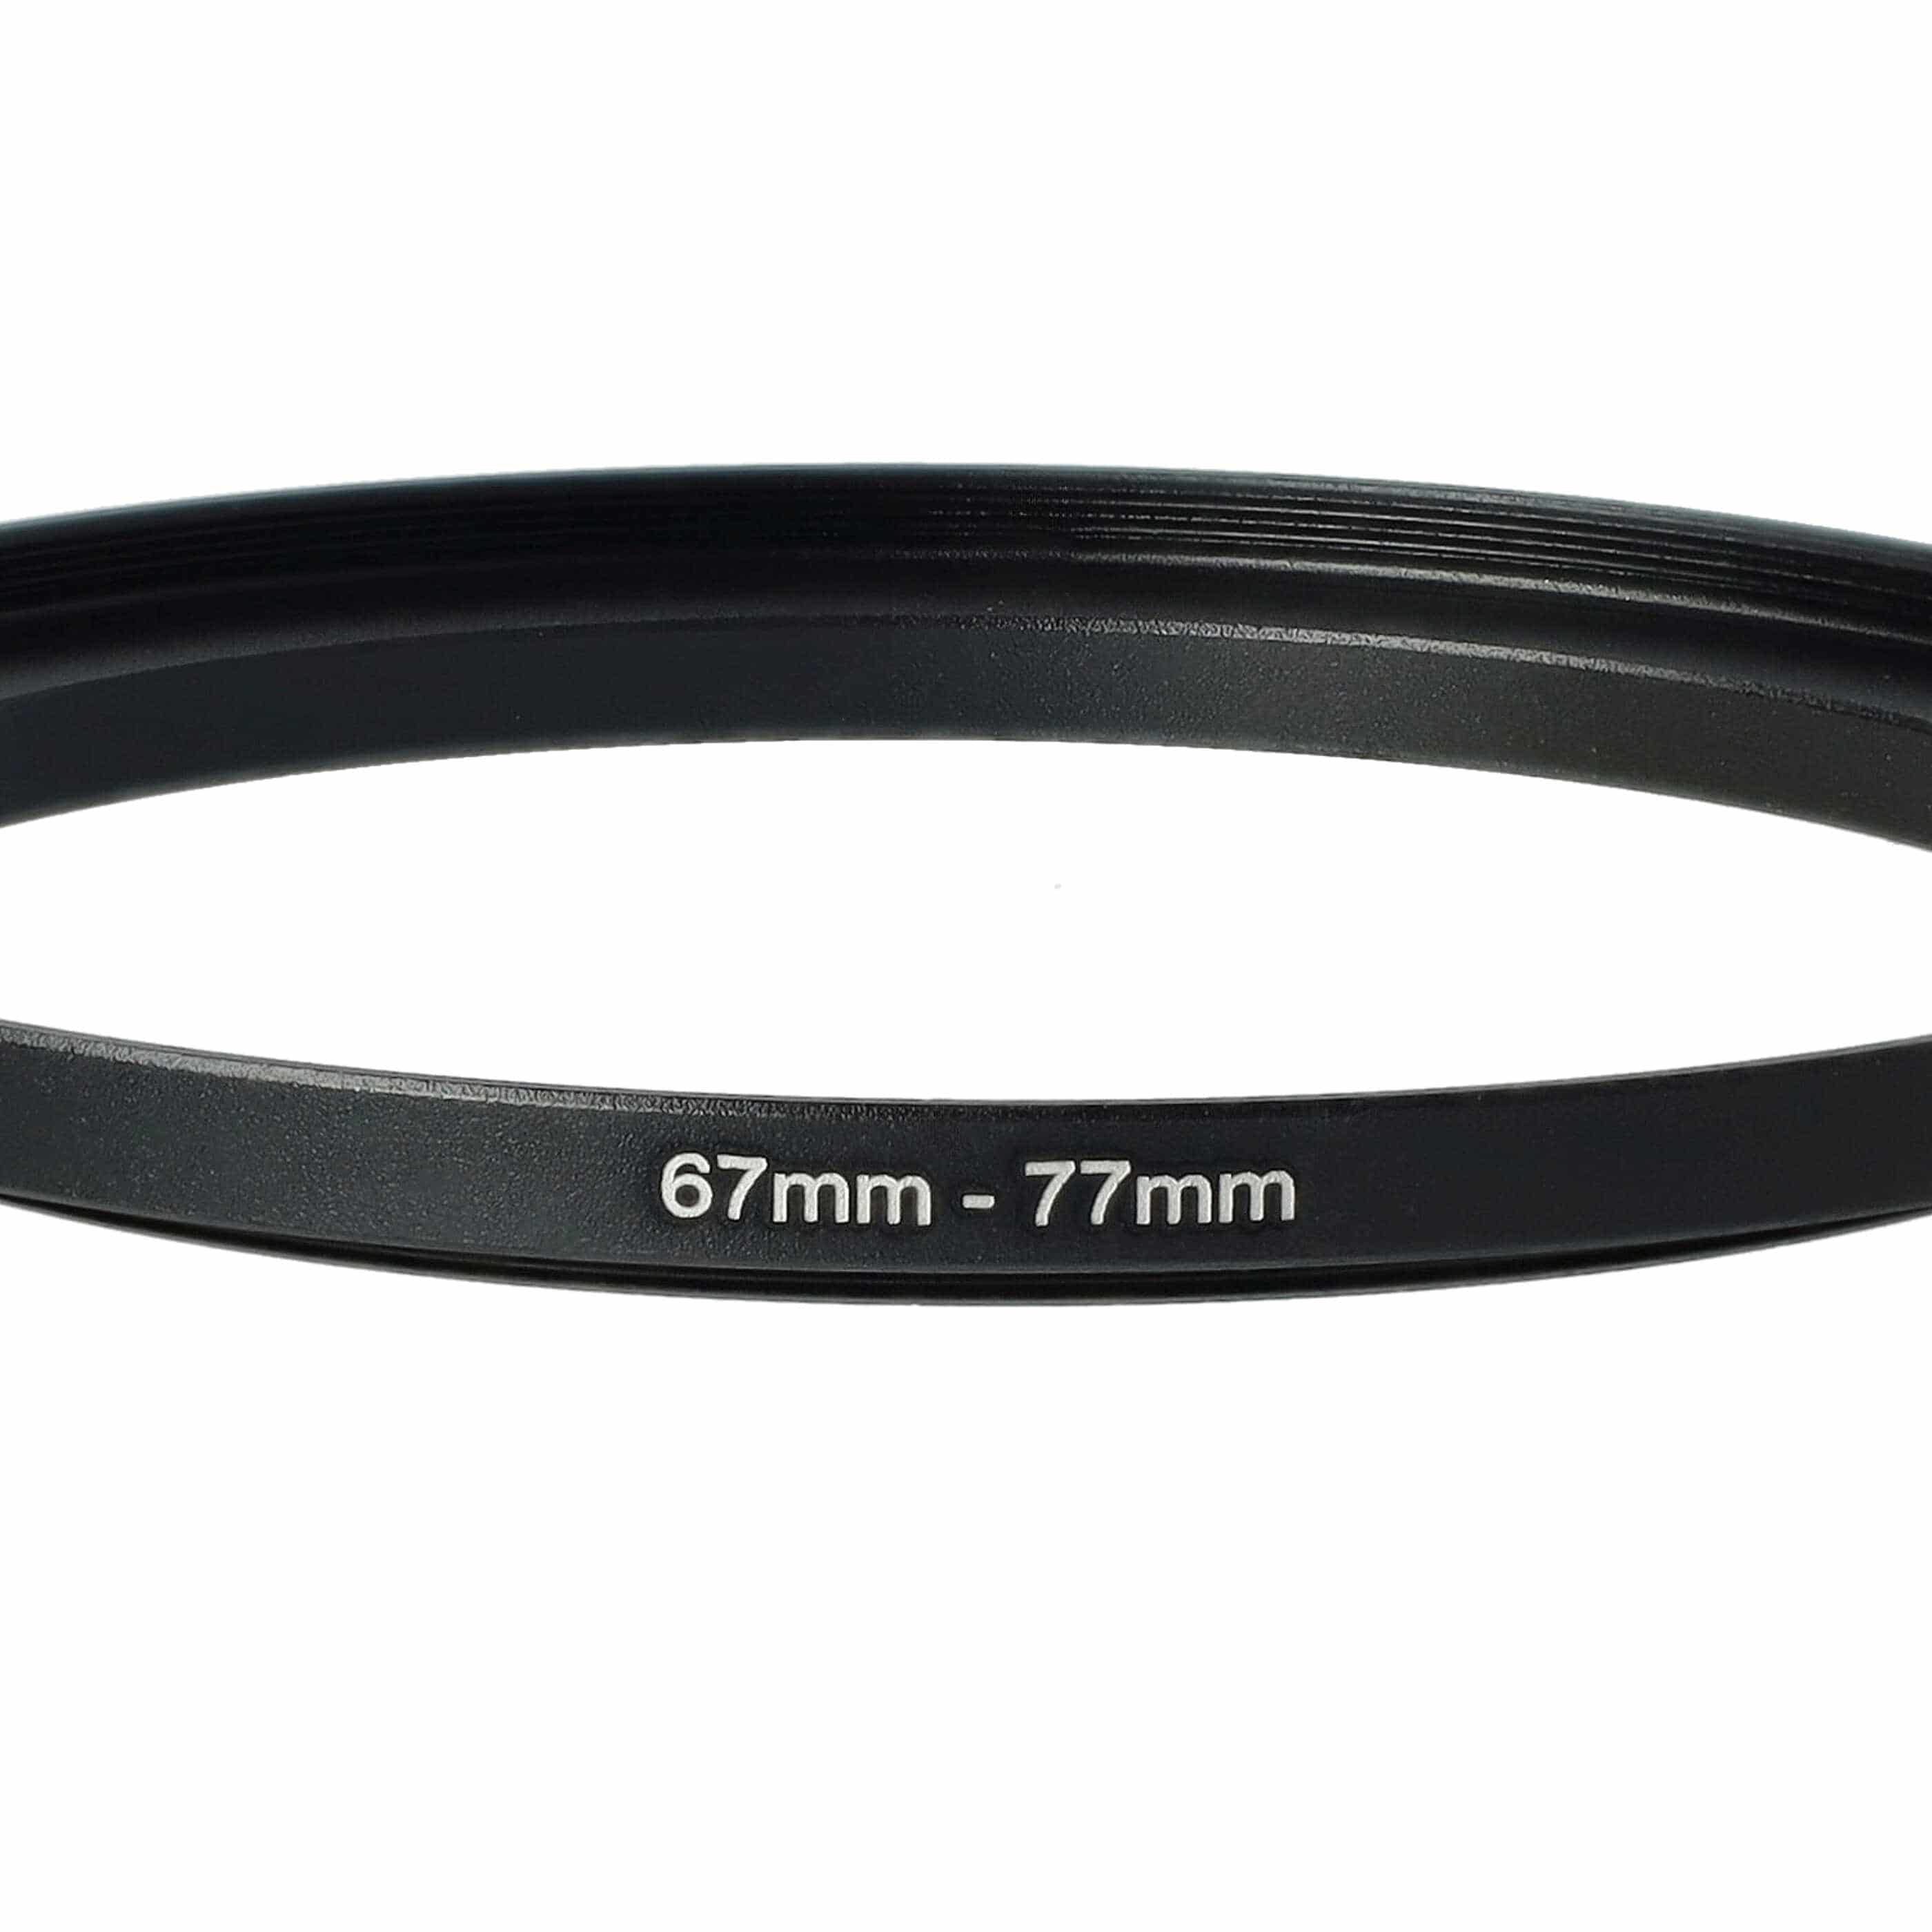 Step-Up-Ring Adapter 67 mm auf 77 mm passend für diverse Kamera-Objektive - Filteradapter